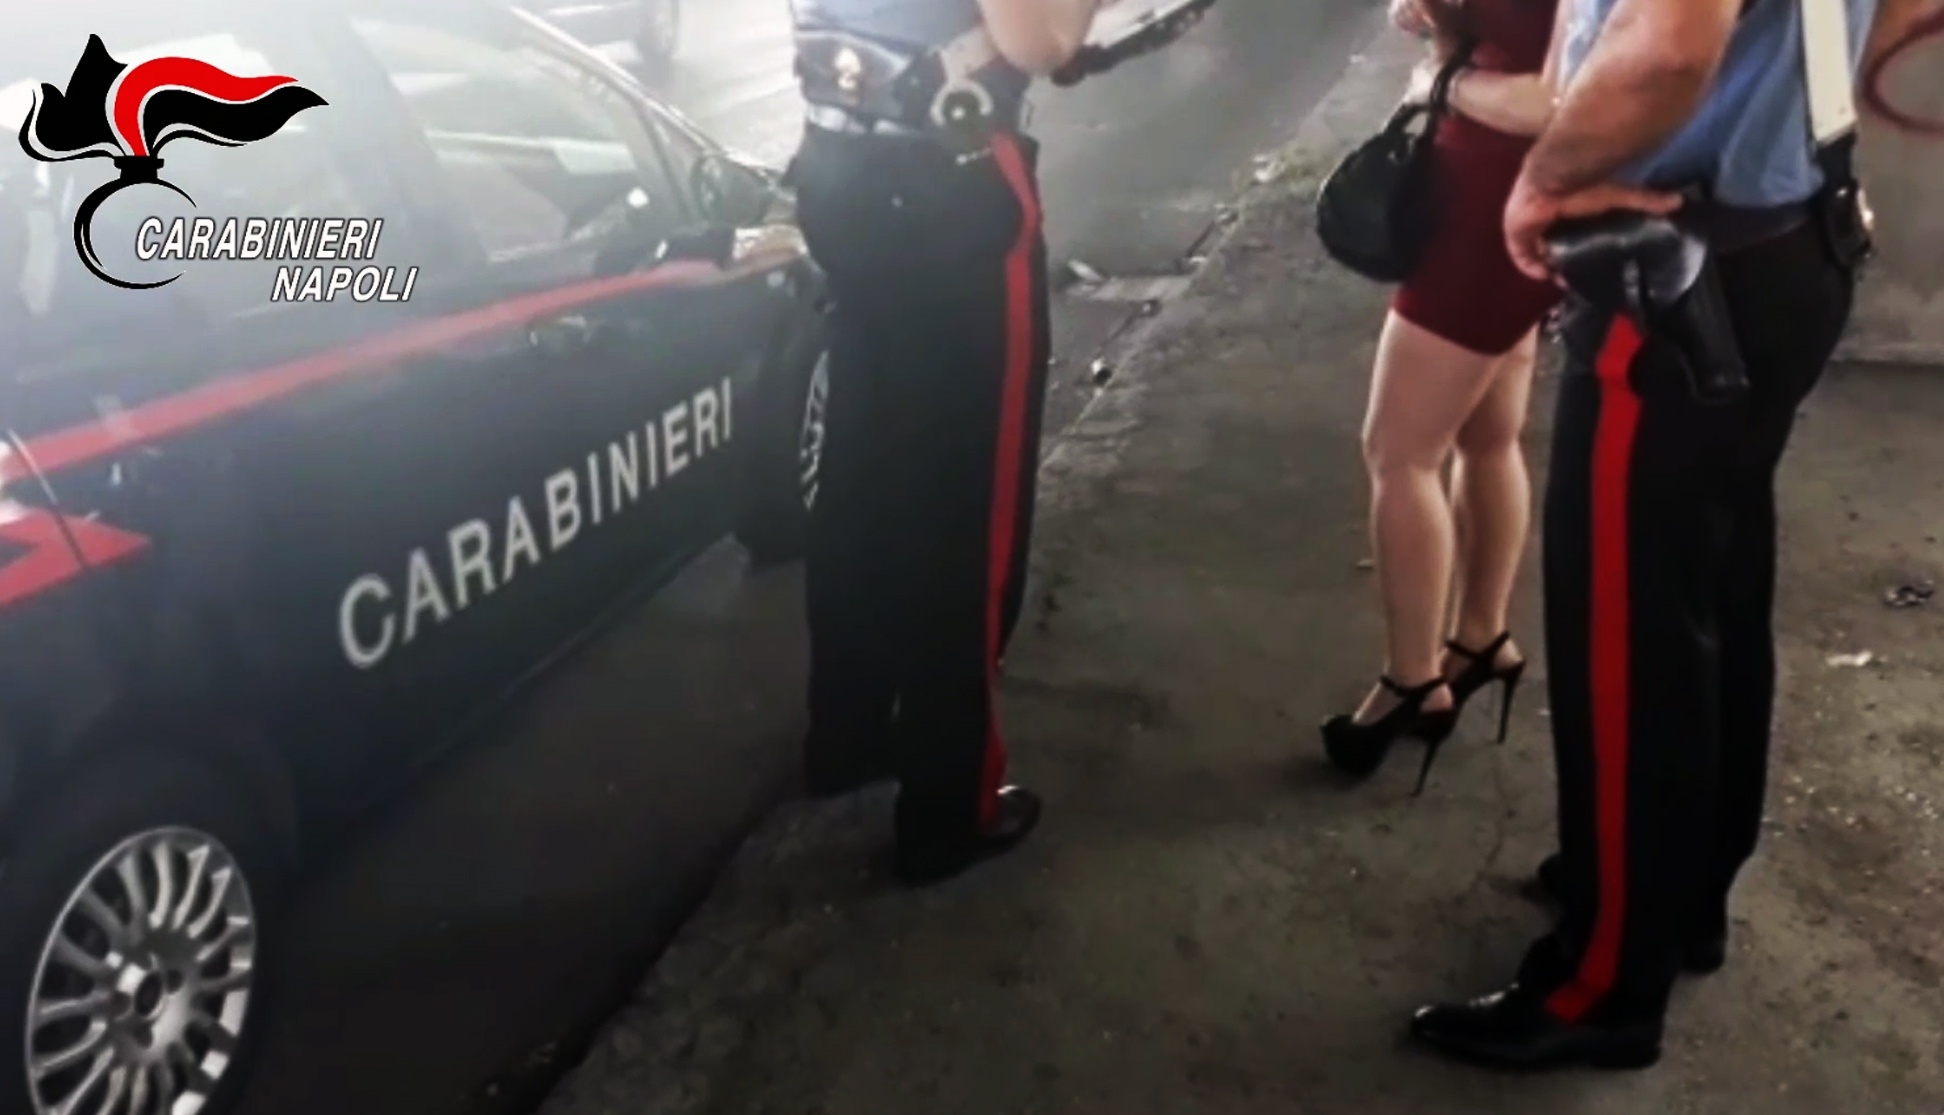 Napoli: estorsioni e usura a transessuali e prostitute della zona orientale, 8 arresti